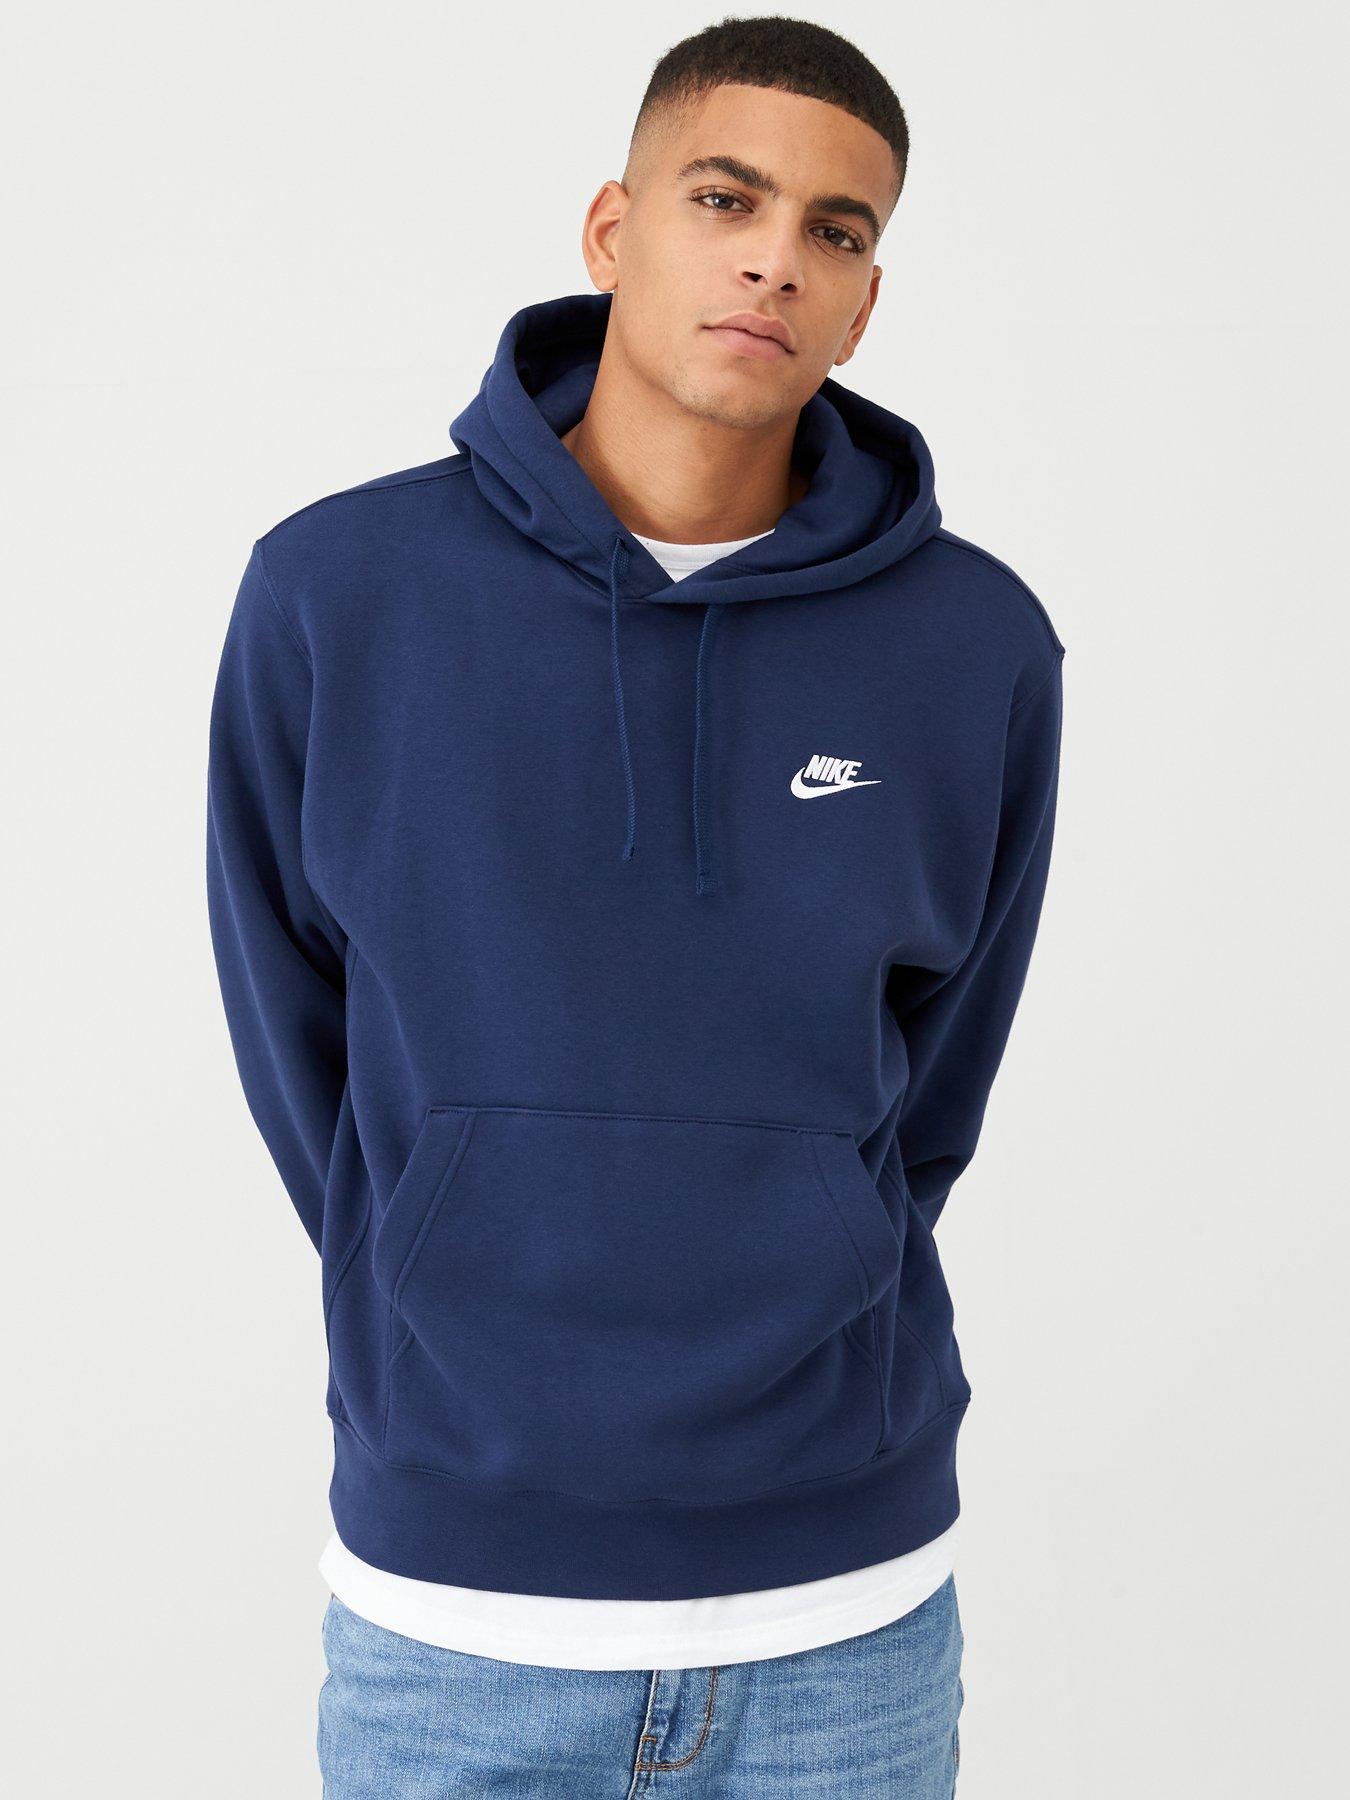 navy blue nike hoodie